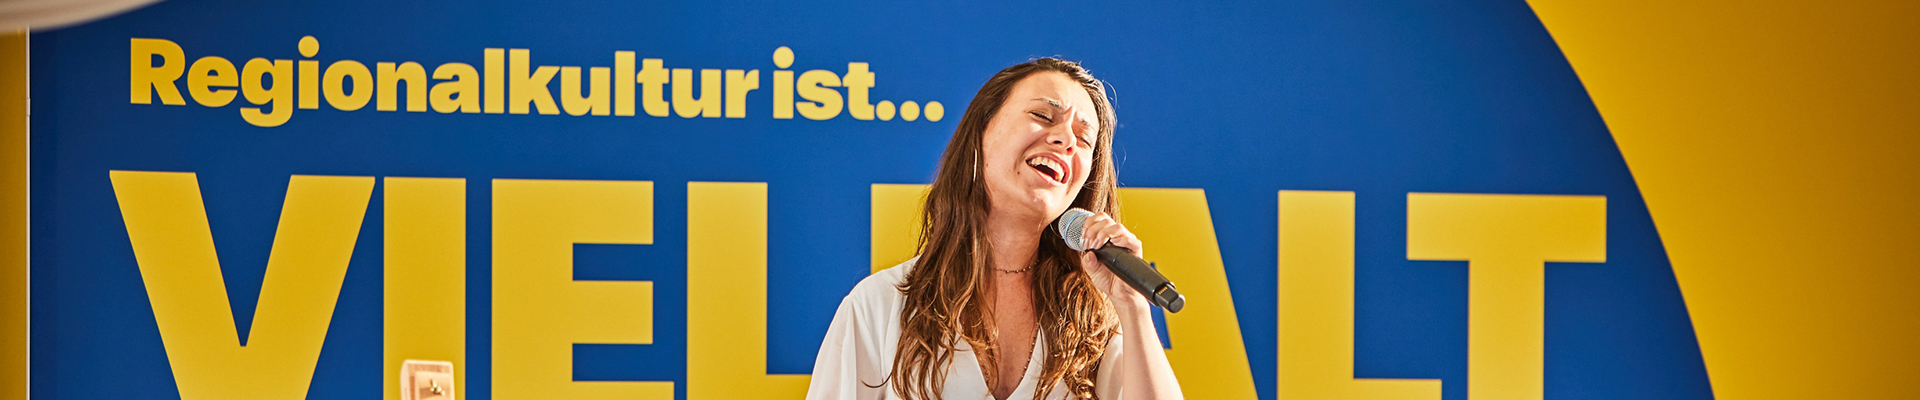 Eine Frau im weißen Kleid steht auf der Bühne und singt in ein Mikrofon.